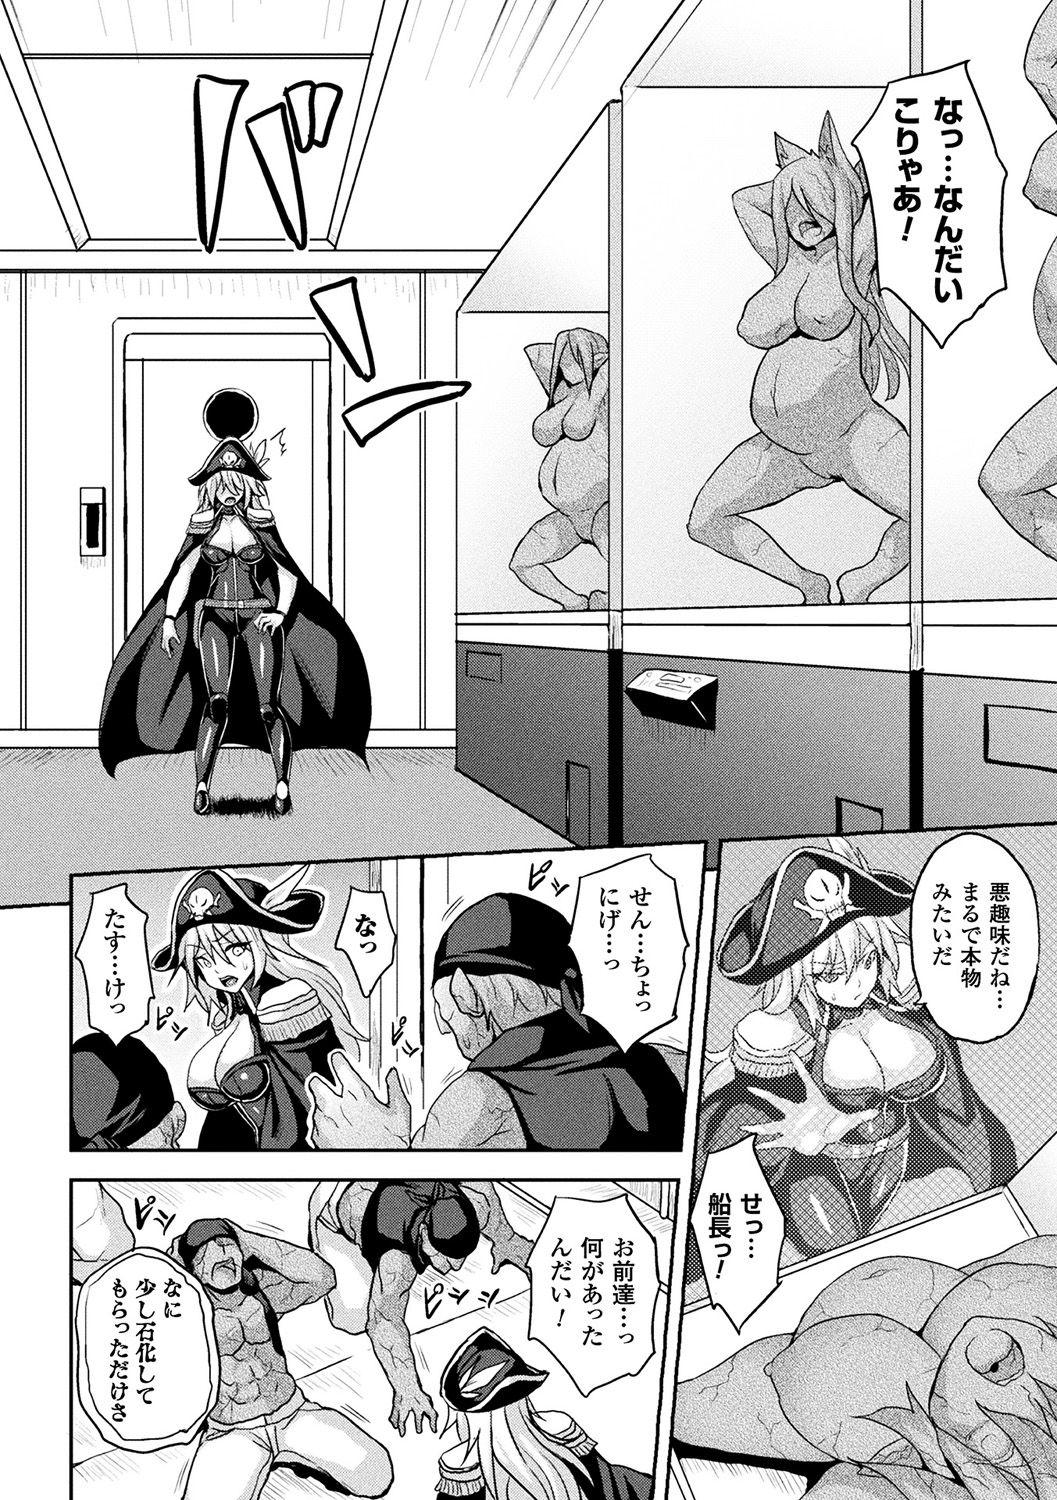 Kink [Anthology] Bessatsu Comic Unreal Sekka END ~Zetsubou no Naka de Sekizou e to Kaerareru Shoujo-tachi~ Vol. 2 [Digital] Farting - Page 6